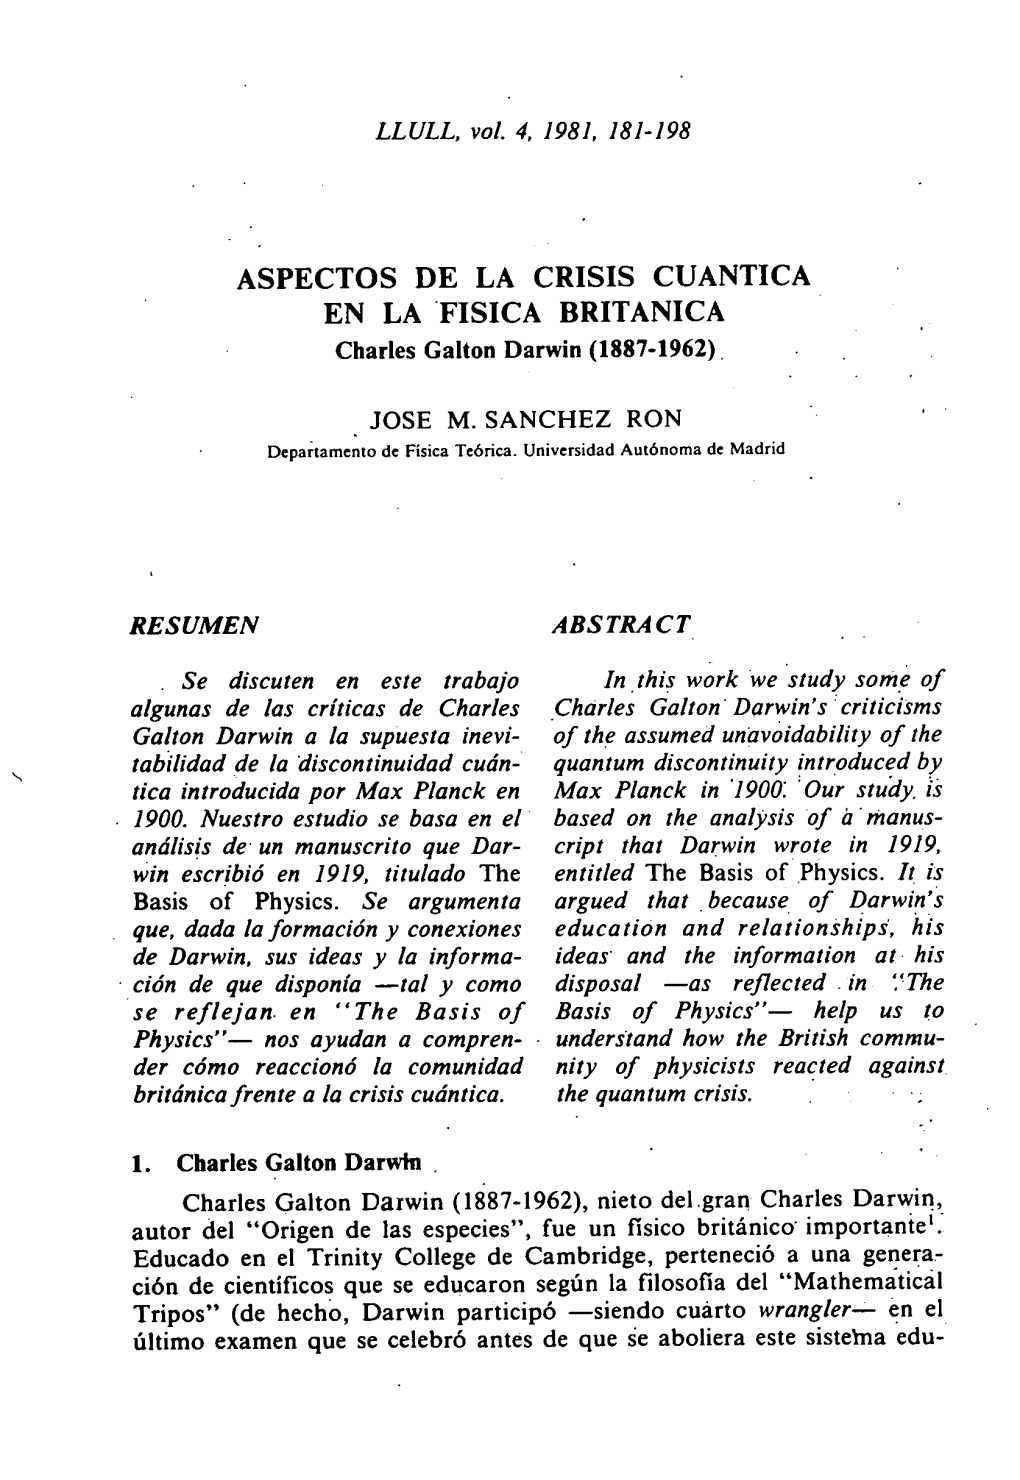 ASPECTOS DE LA CRISIS CUANTICA EN LA FISICA BRITANICA Charles Galton Darwin (1887-1962)